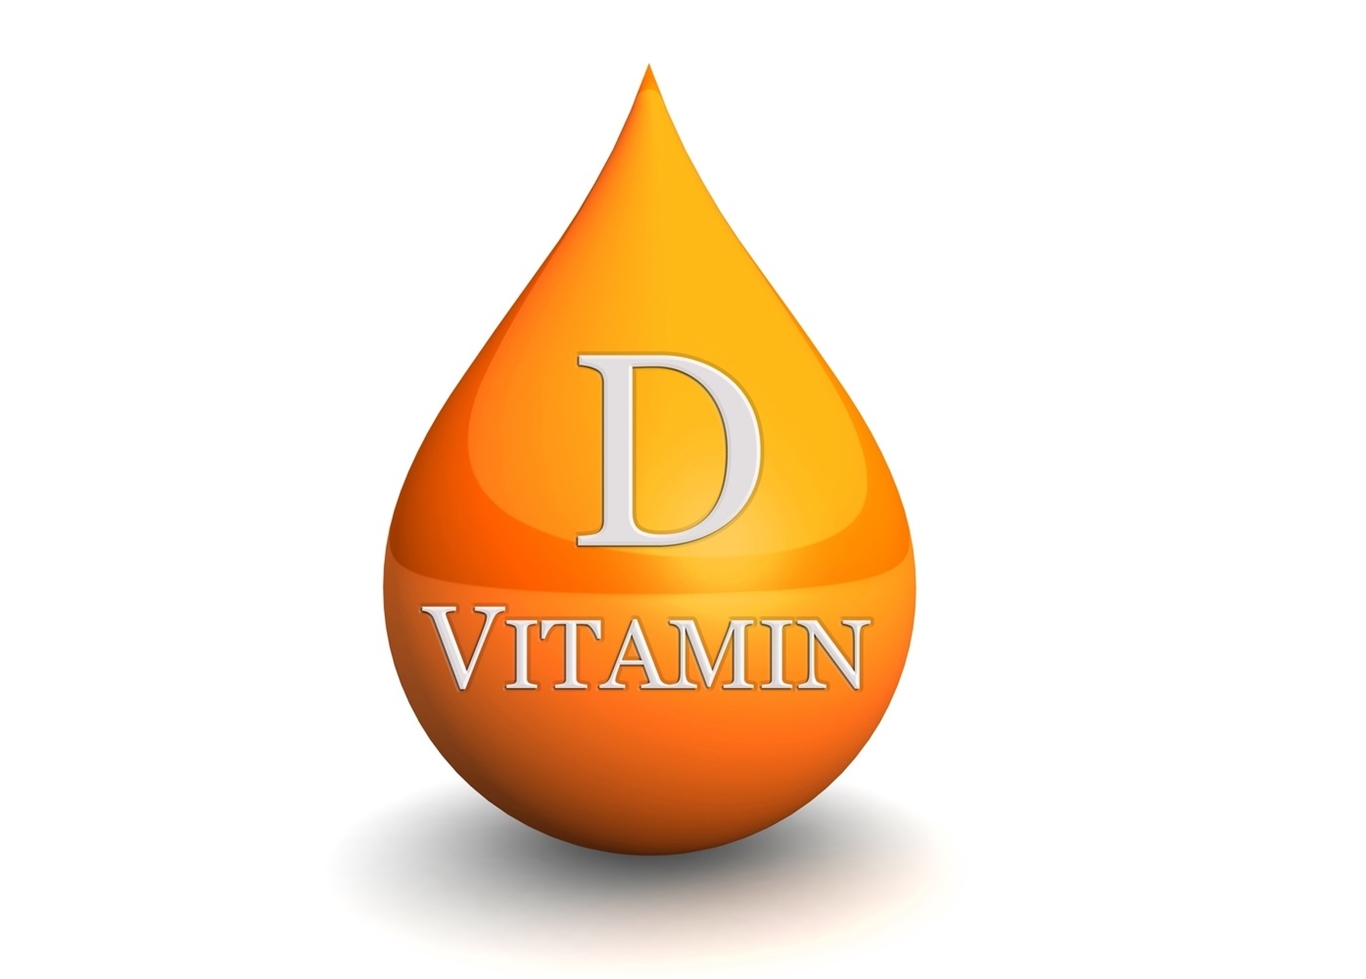 Dấu hiệu của người thiếu vitamin D bạn nên chú ý!